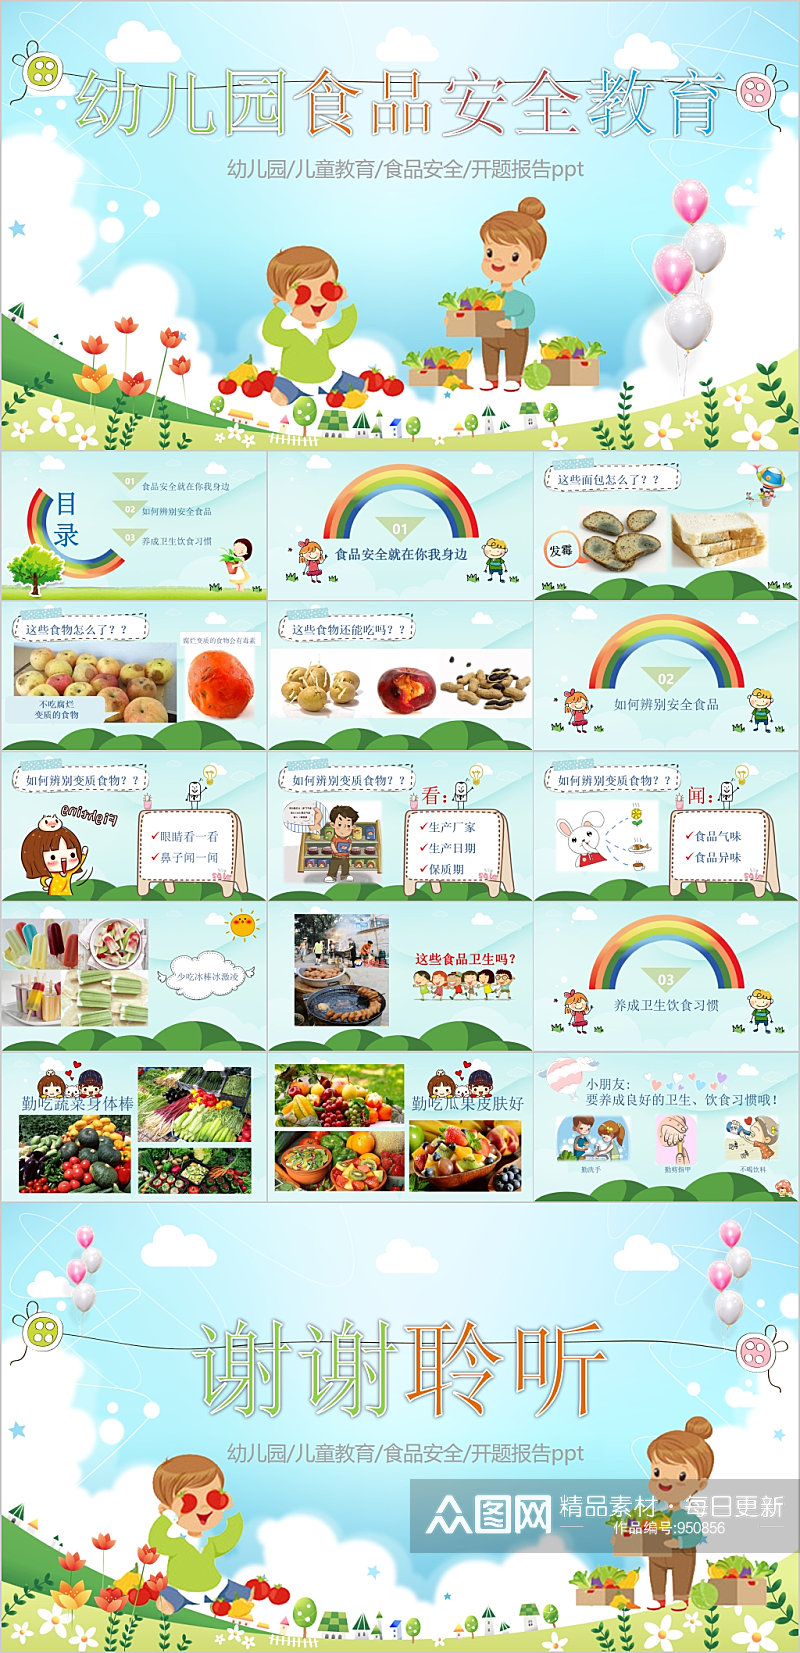 幼儿园食品安全法教育PPT模板素材